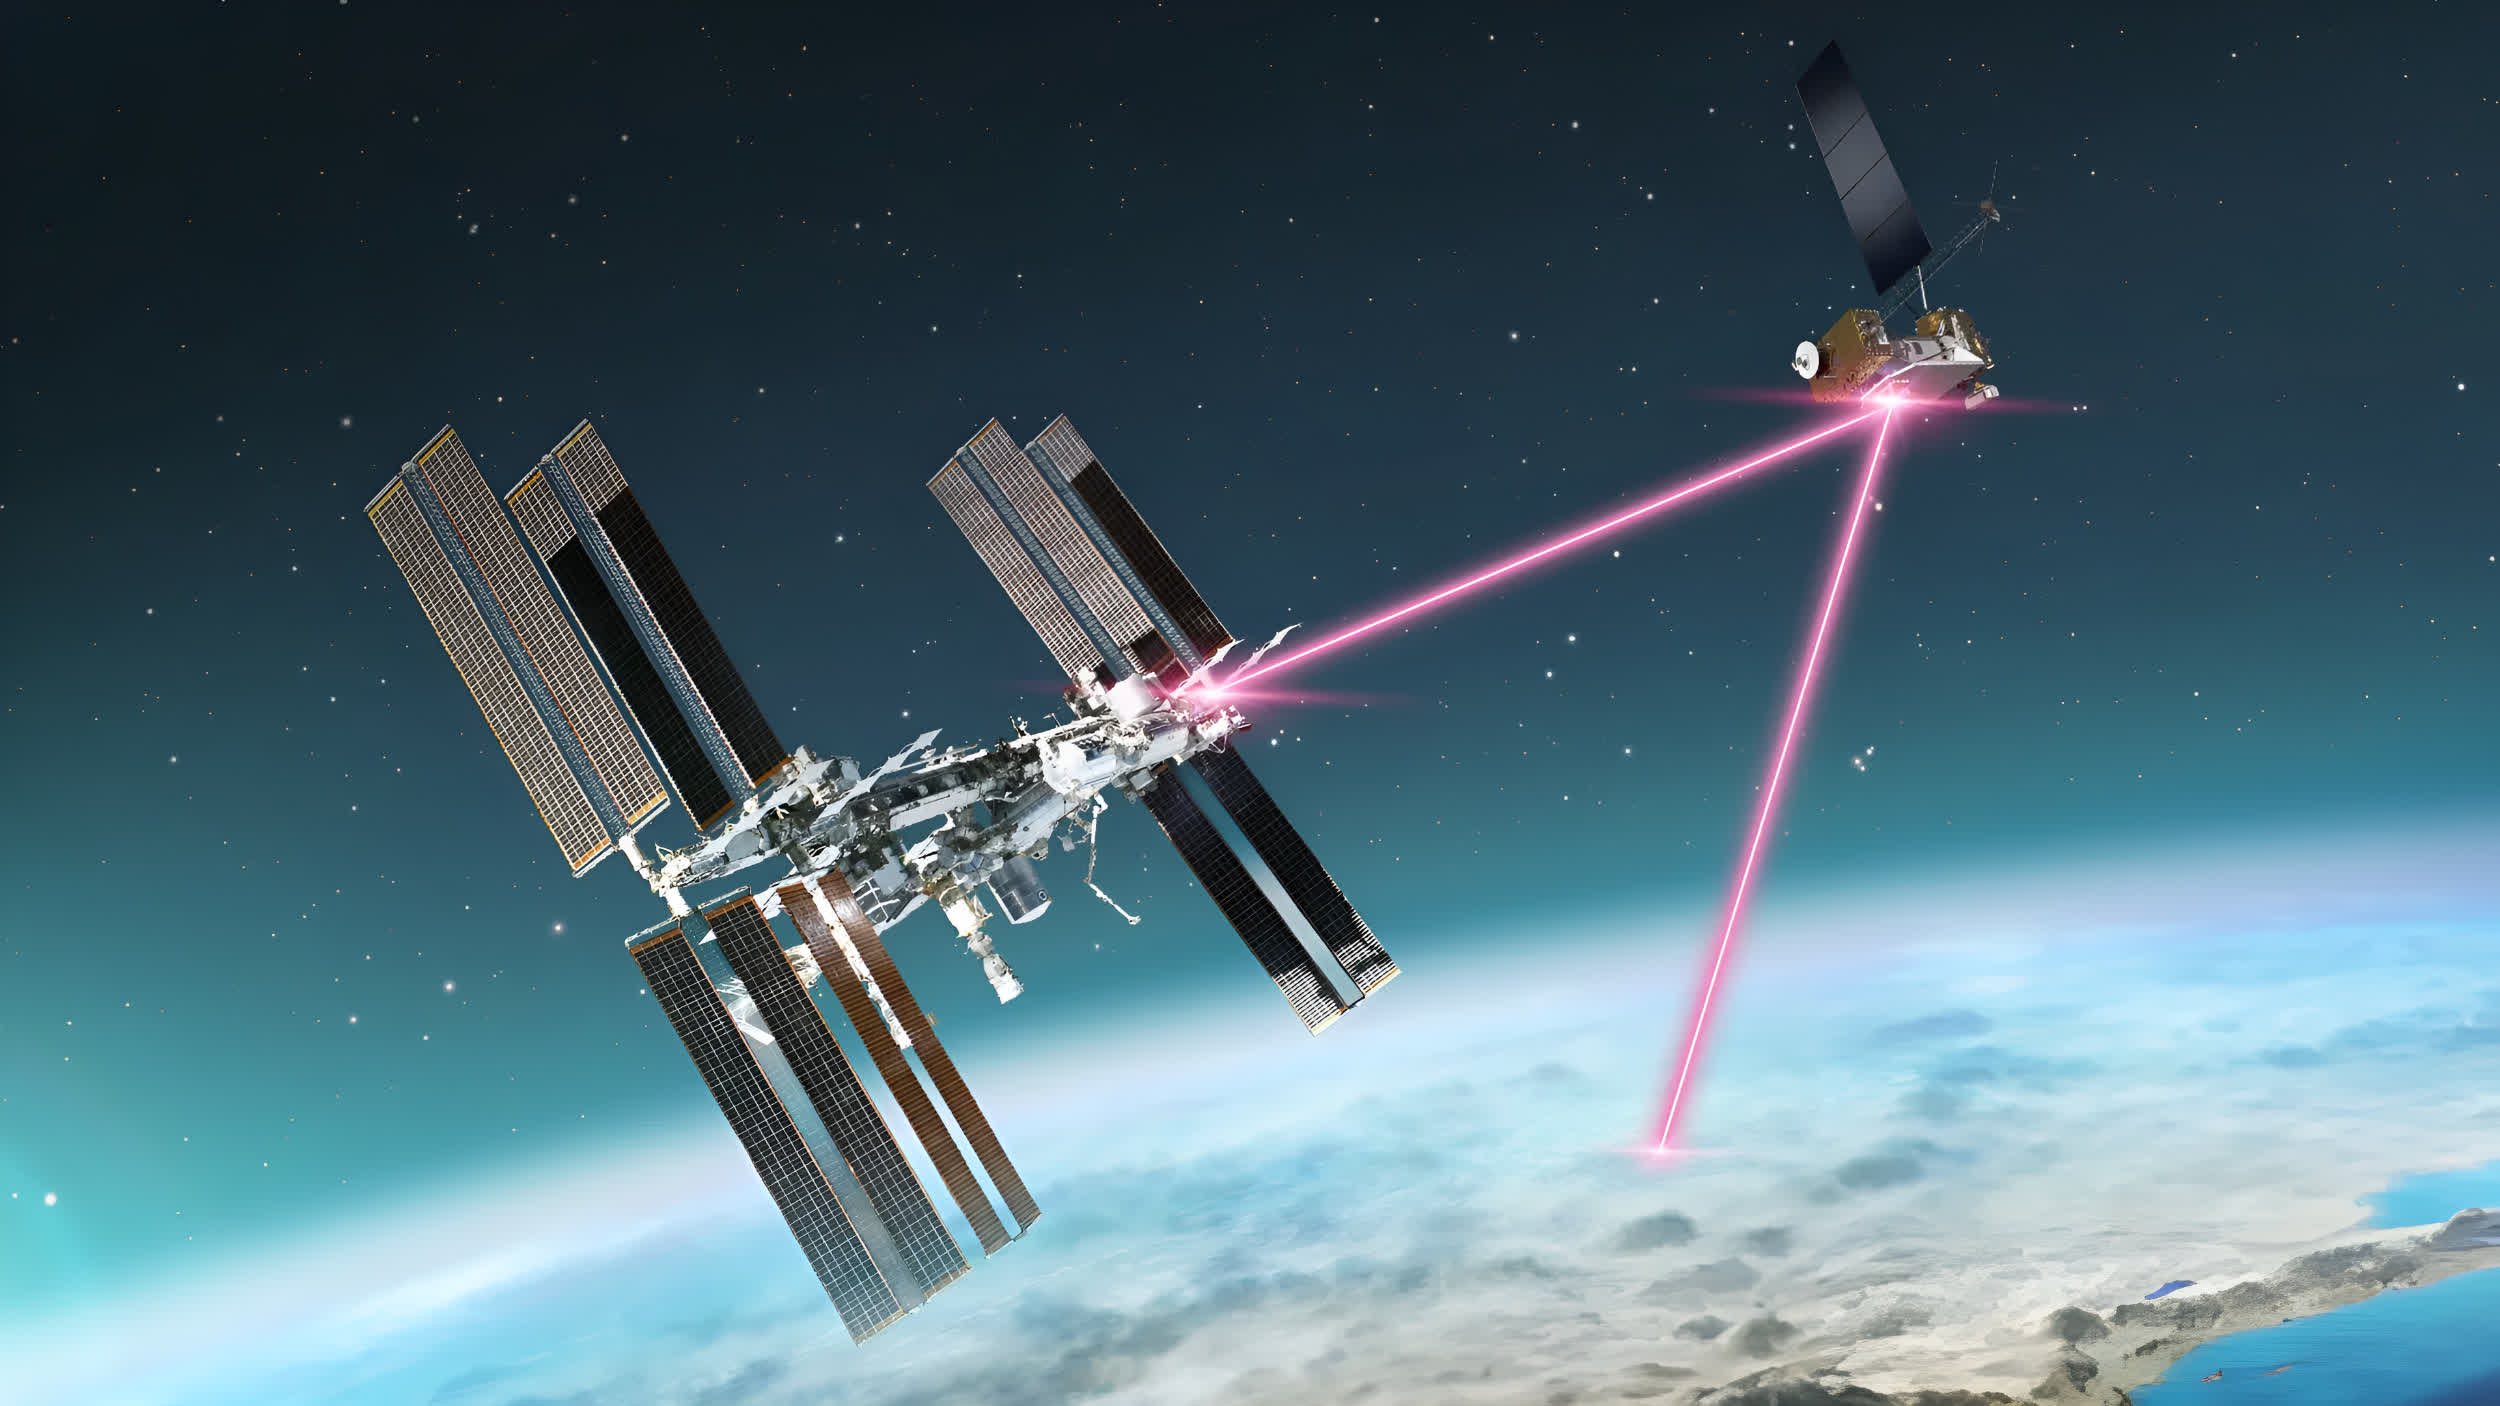 La NASA transmite videos 4K desde un avión al espacio (y viceversa) a velocidades vertiginosas utilizando tecnología láser